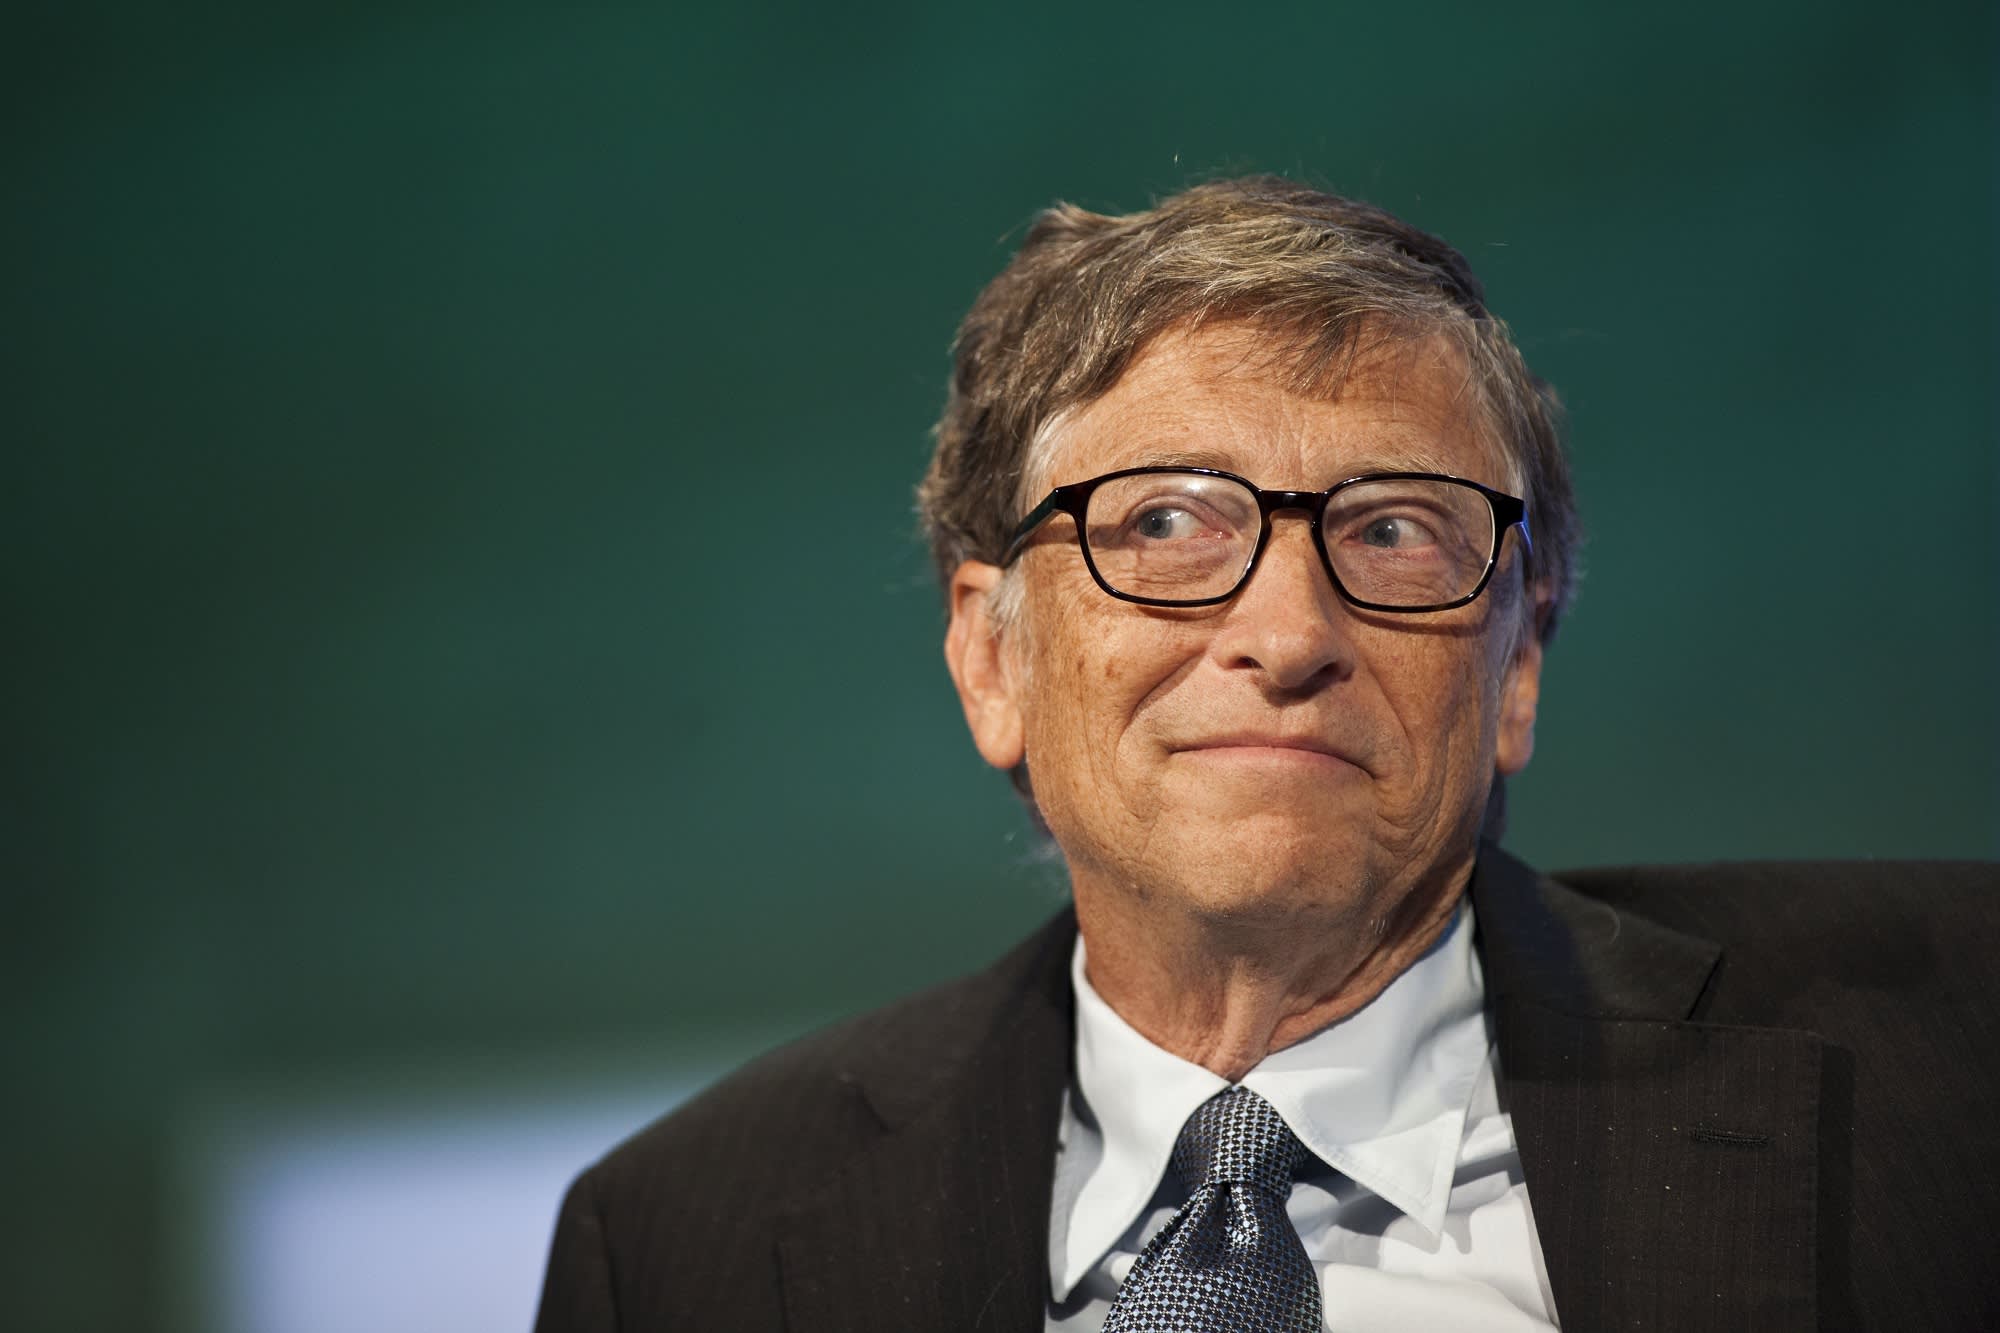 Успех Билла Гейтса обусловлен «скрытым» навыком, которым вы тоже можете овладеть, считает эксперт по психологии